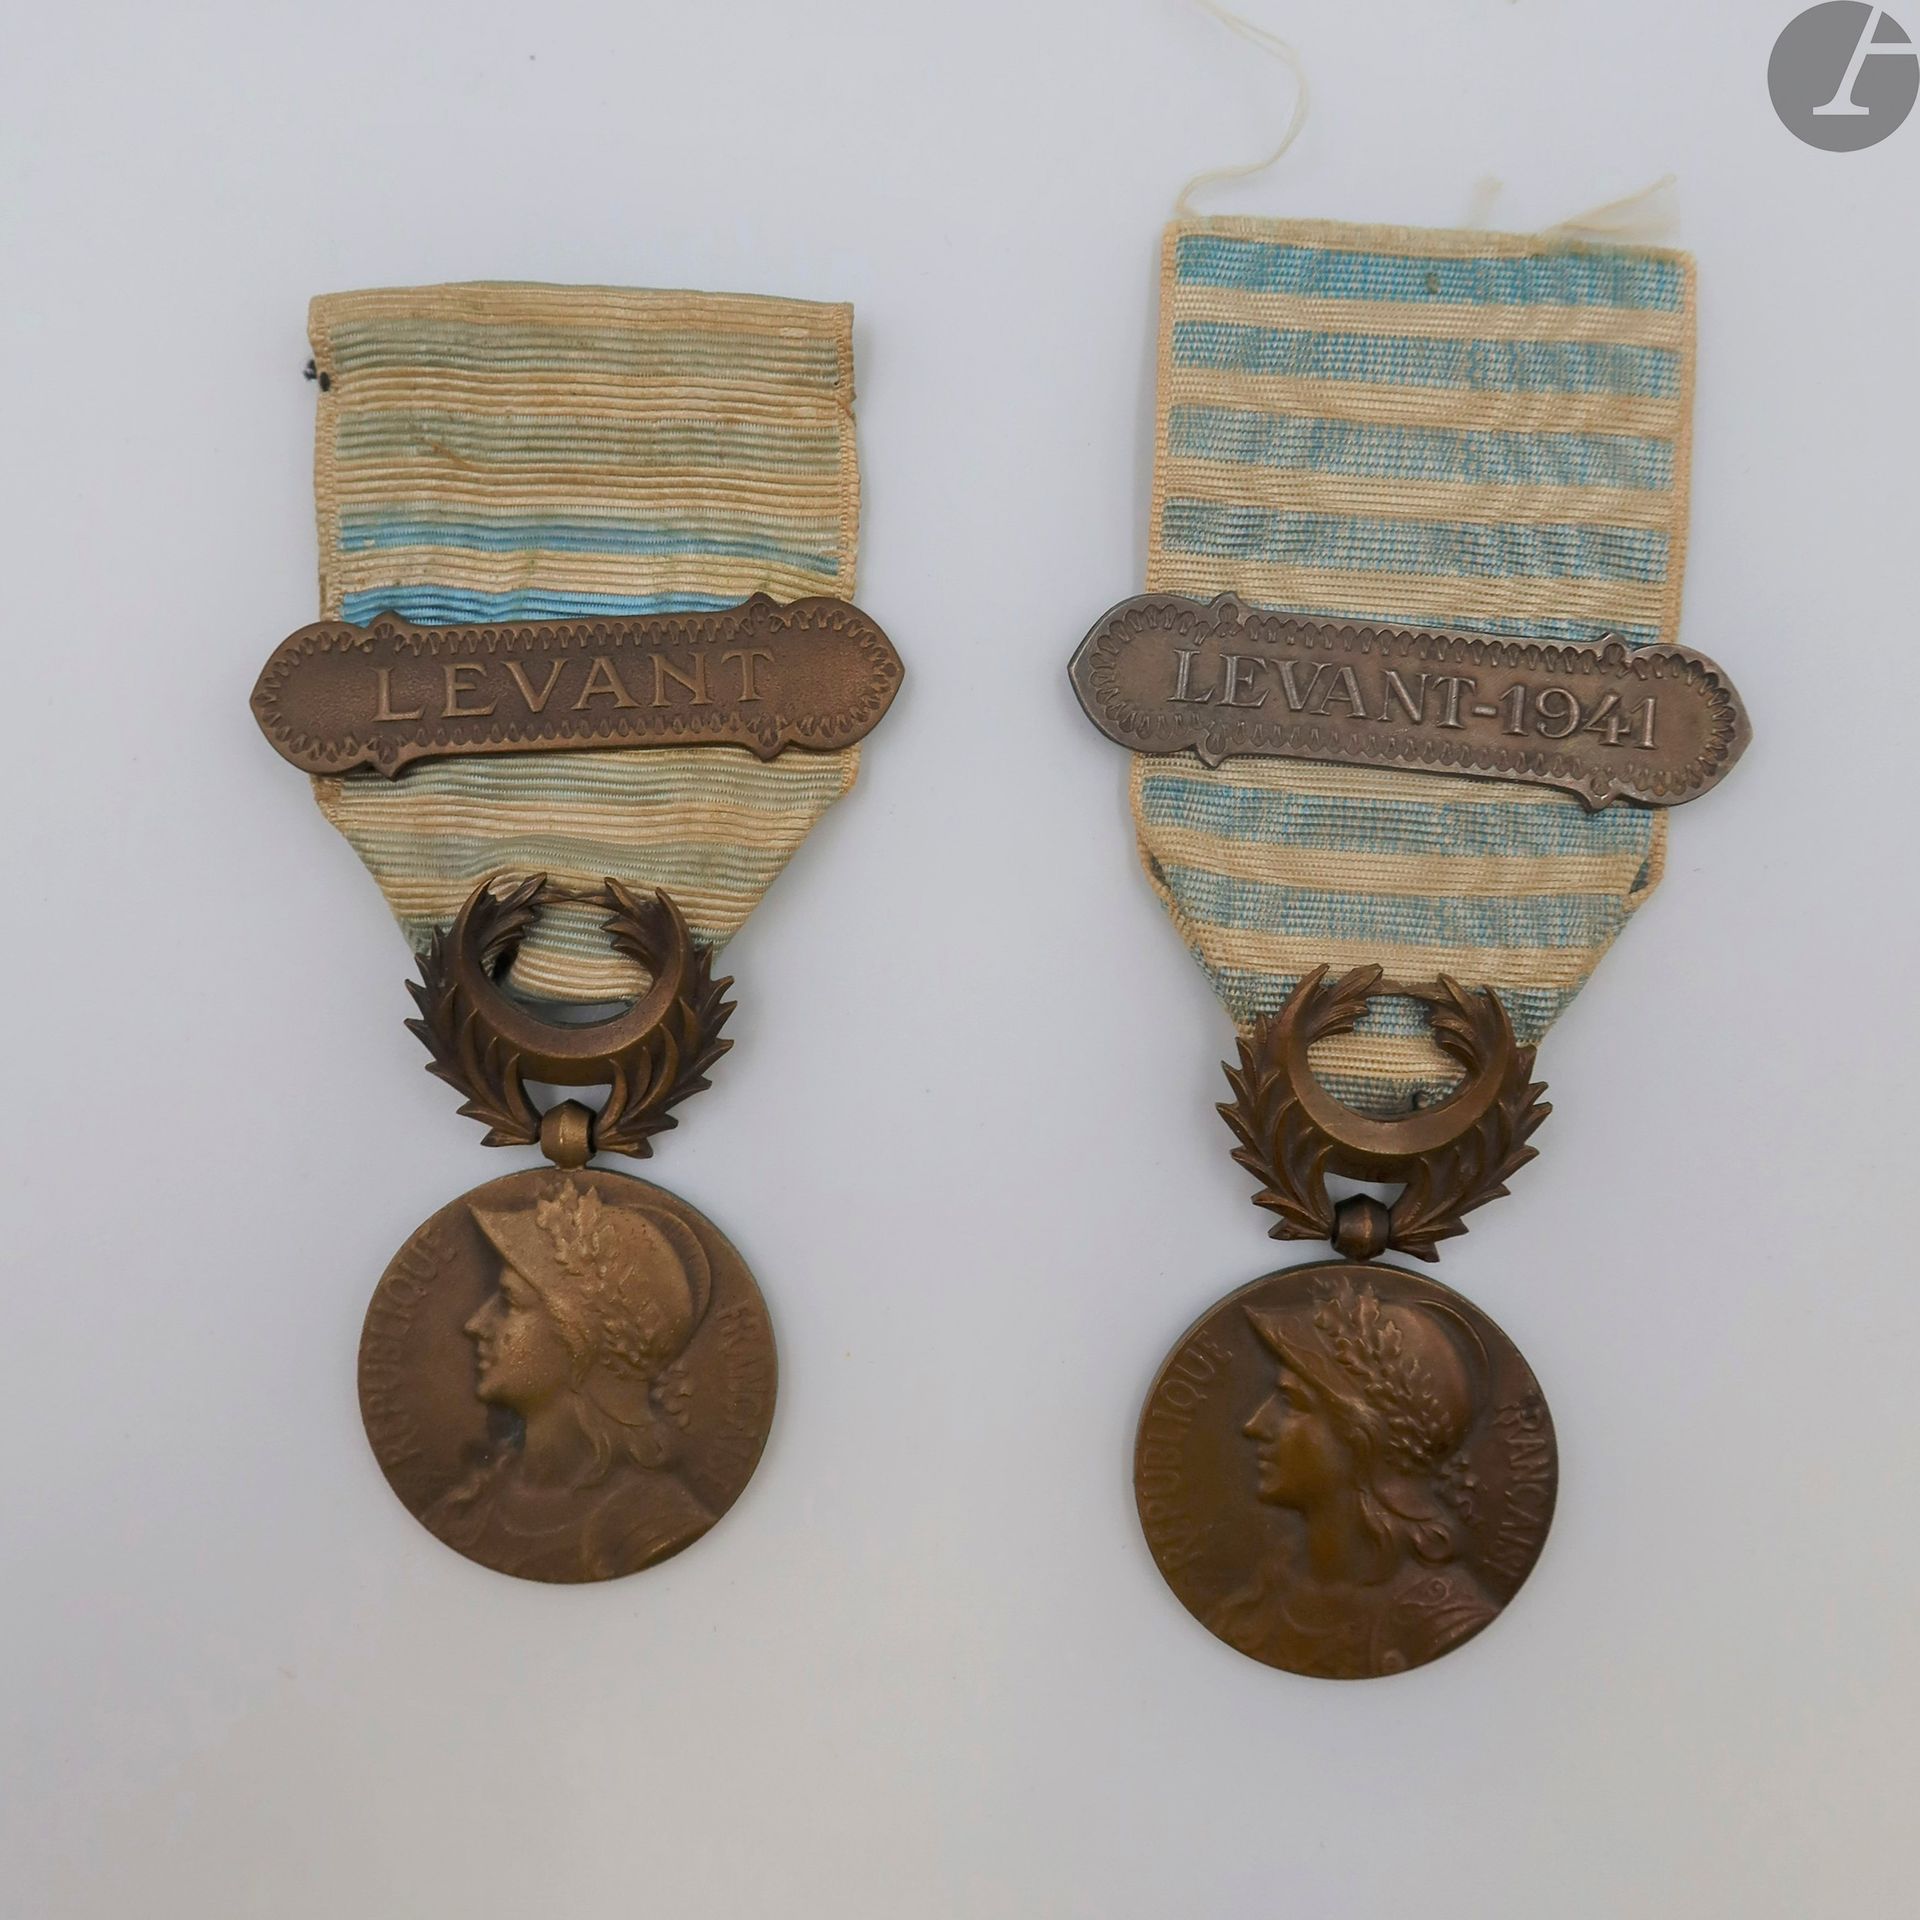 Null 法国
LEVANT奖章（1922年）
两枚青铜奖章：
--深色的铜锈。背面有铸币厂的标记。带有东方风格 "LEVANT - 1941 "扣子的丝带。
&hellip;